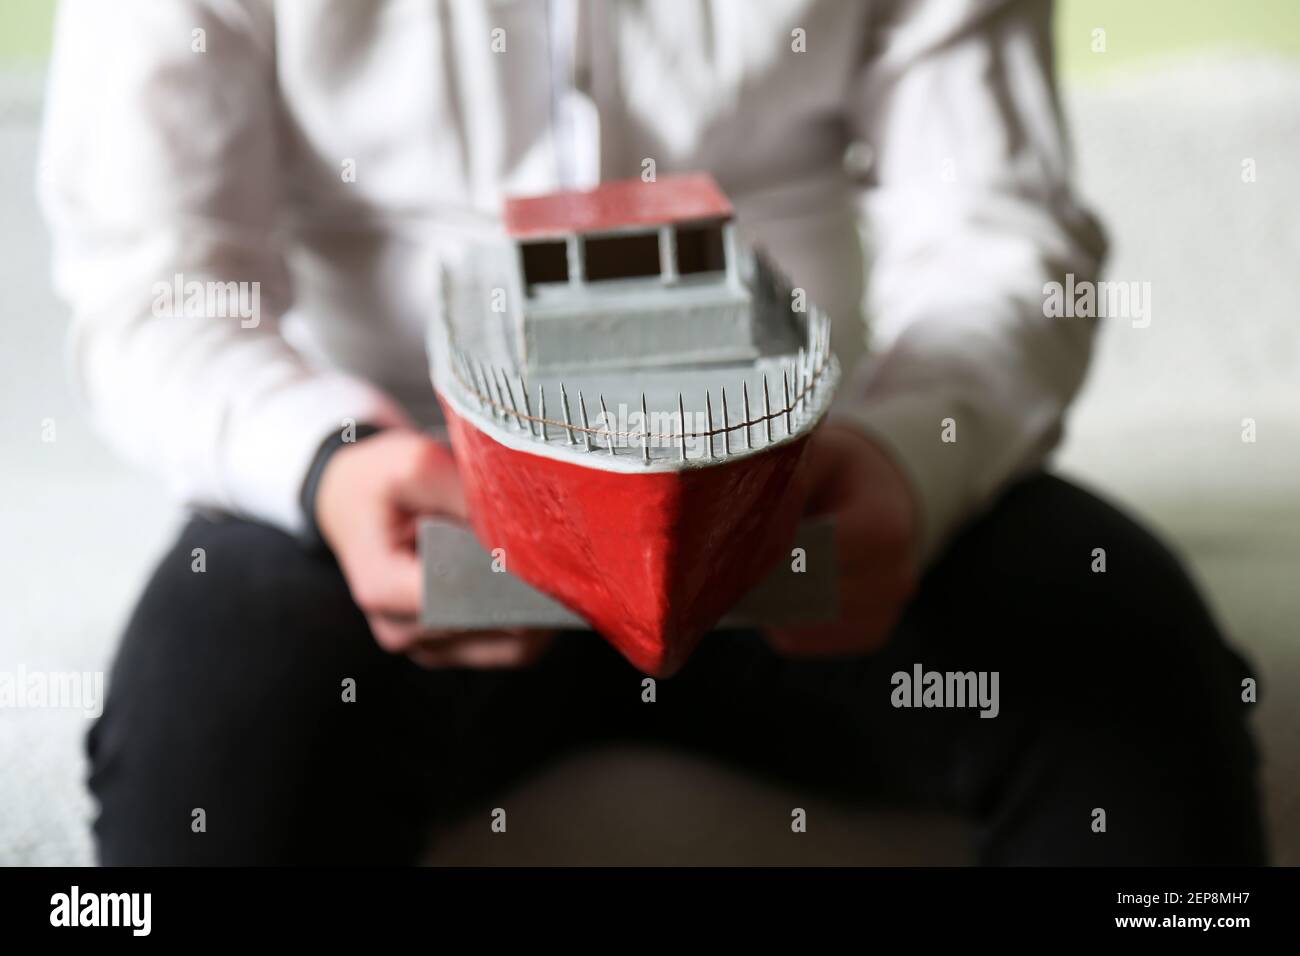 Il ragazzo sta tenendo una nave improvvisata. Uno yacht fatto da un ragazzo. Una nave giocattolo. Foto Stock